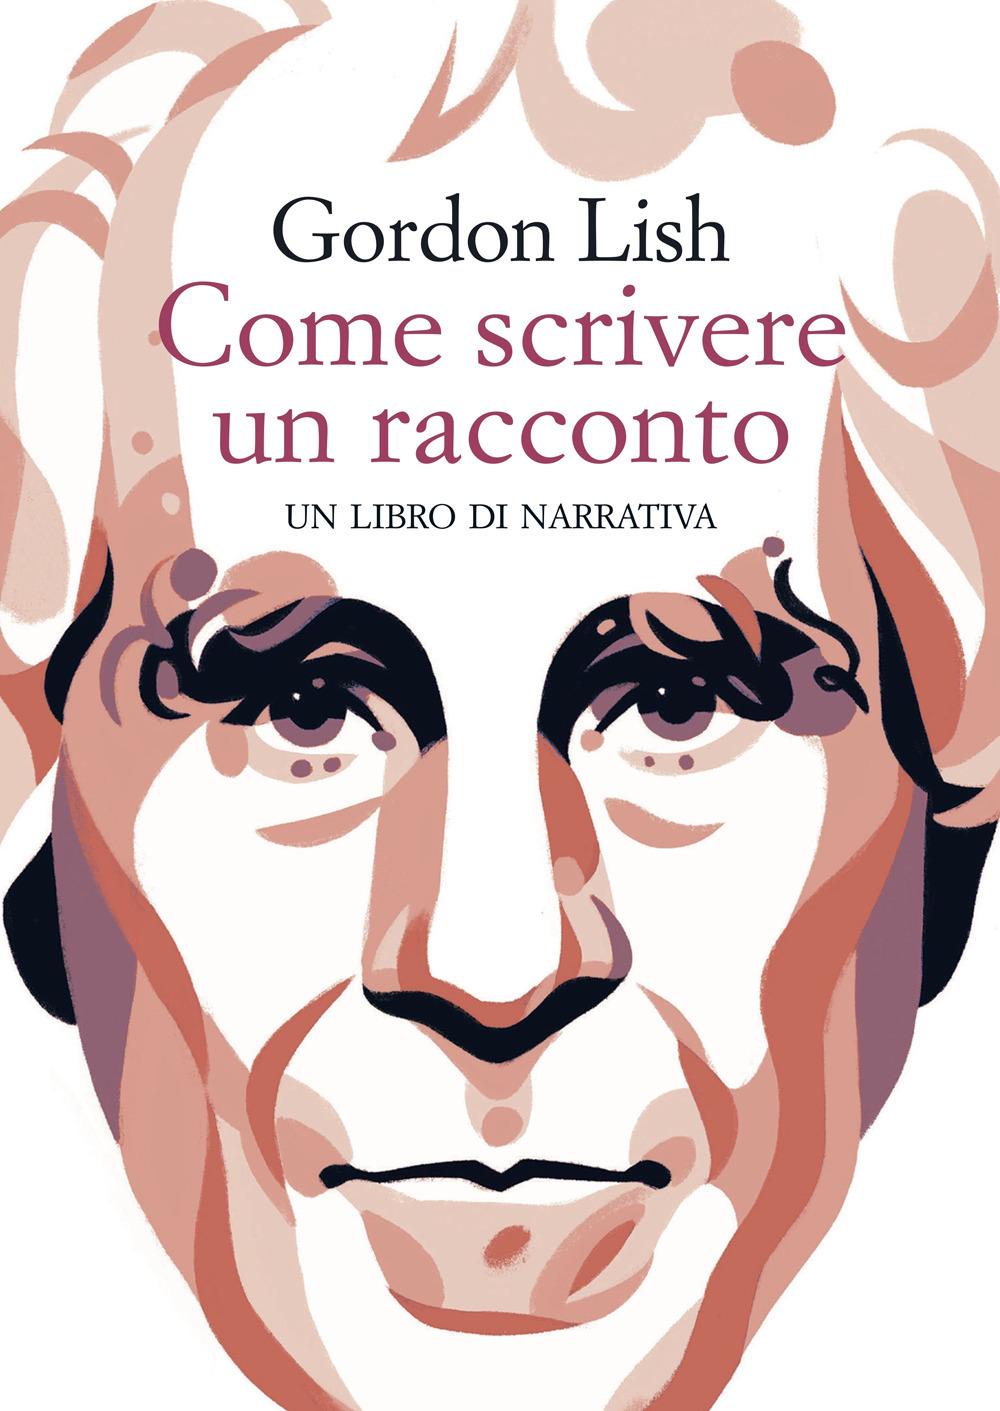 Libri Gordon Lish - Come Scrivere Un Racconto. Un Libro Di Narrativa NUOVO SIGILLATO, EDIZIONE DEL 07/10/2022 SUBITO DISPONIBILE